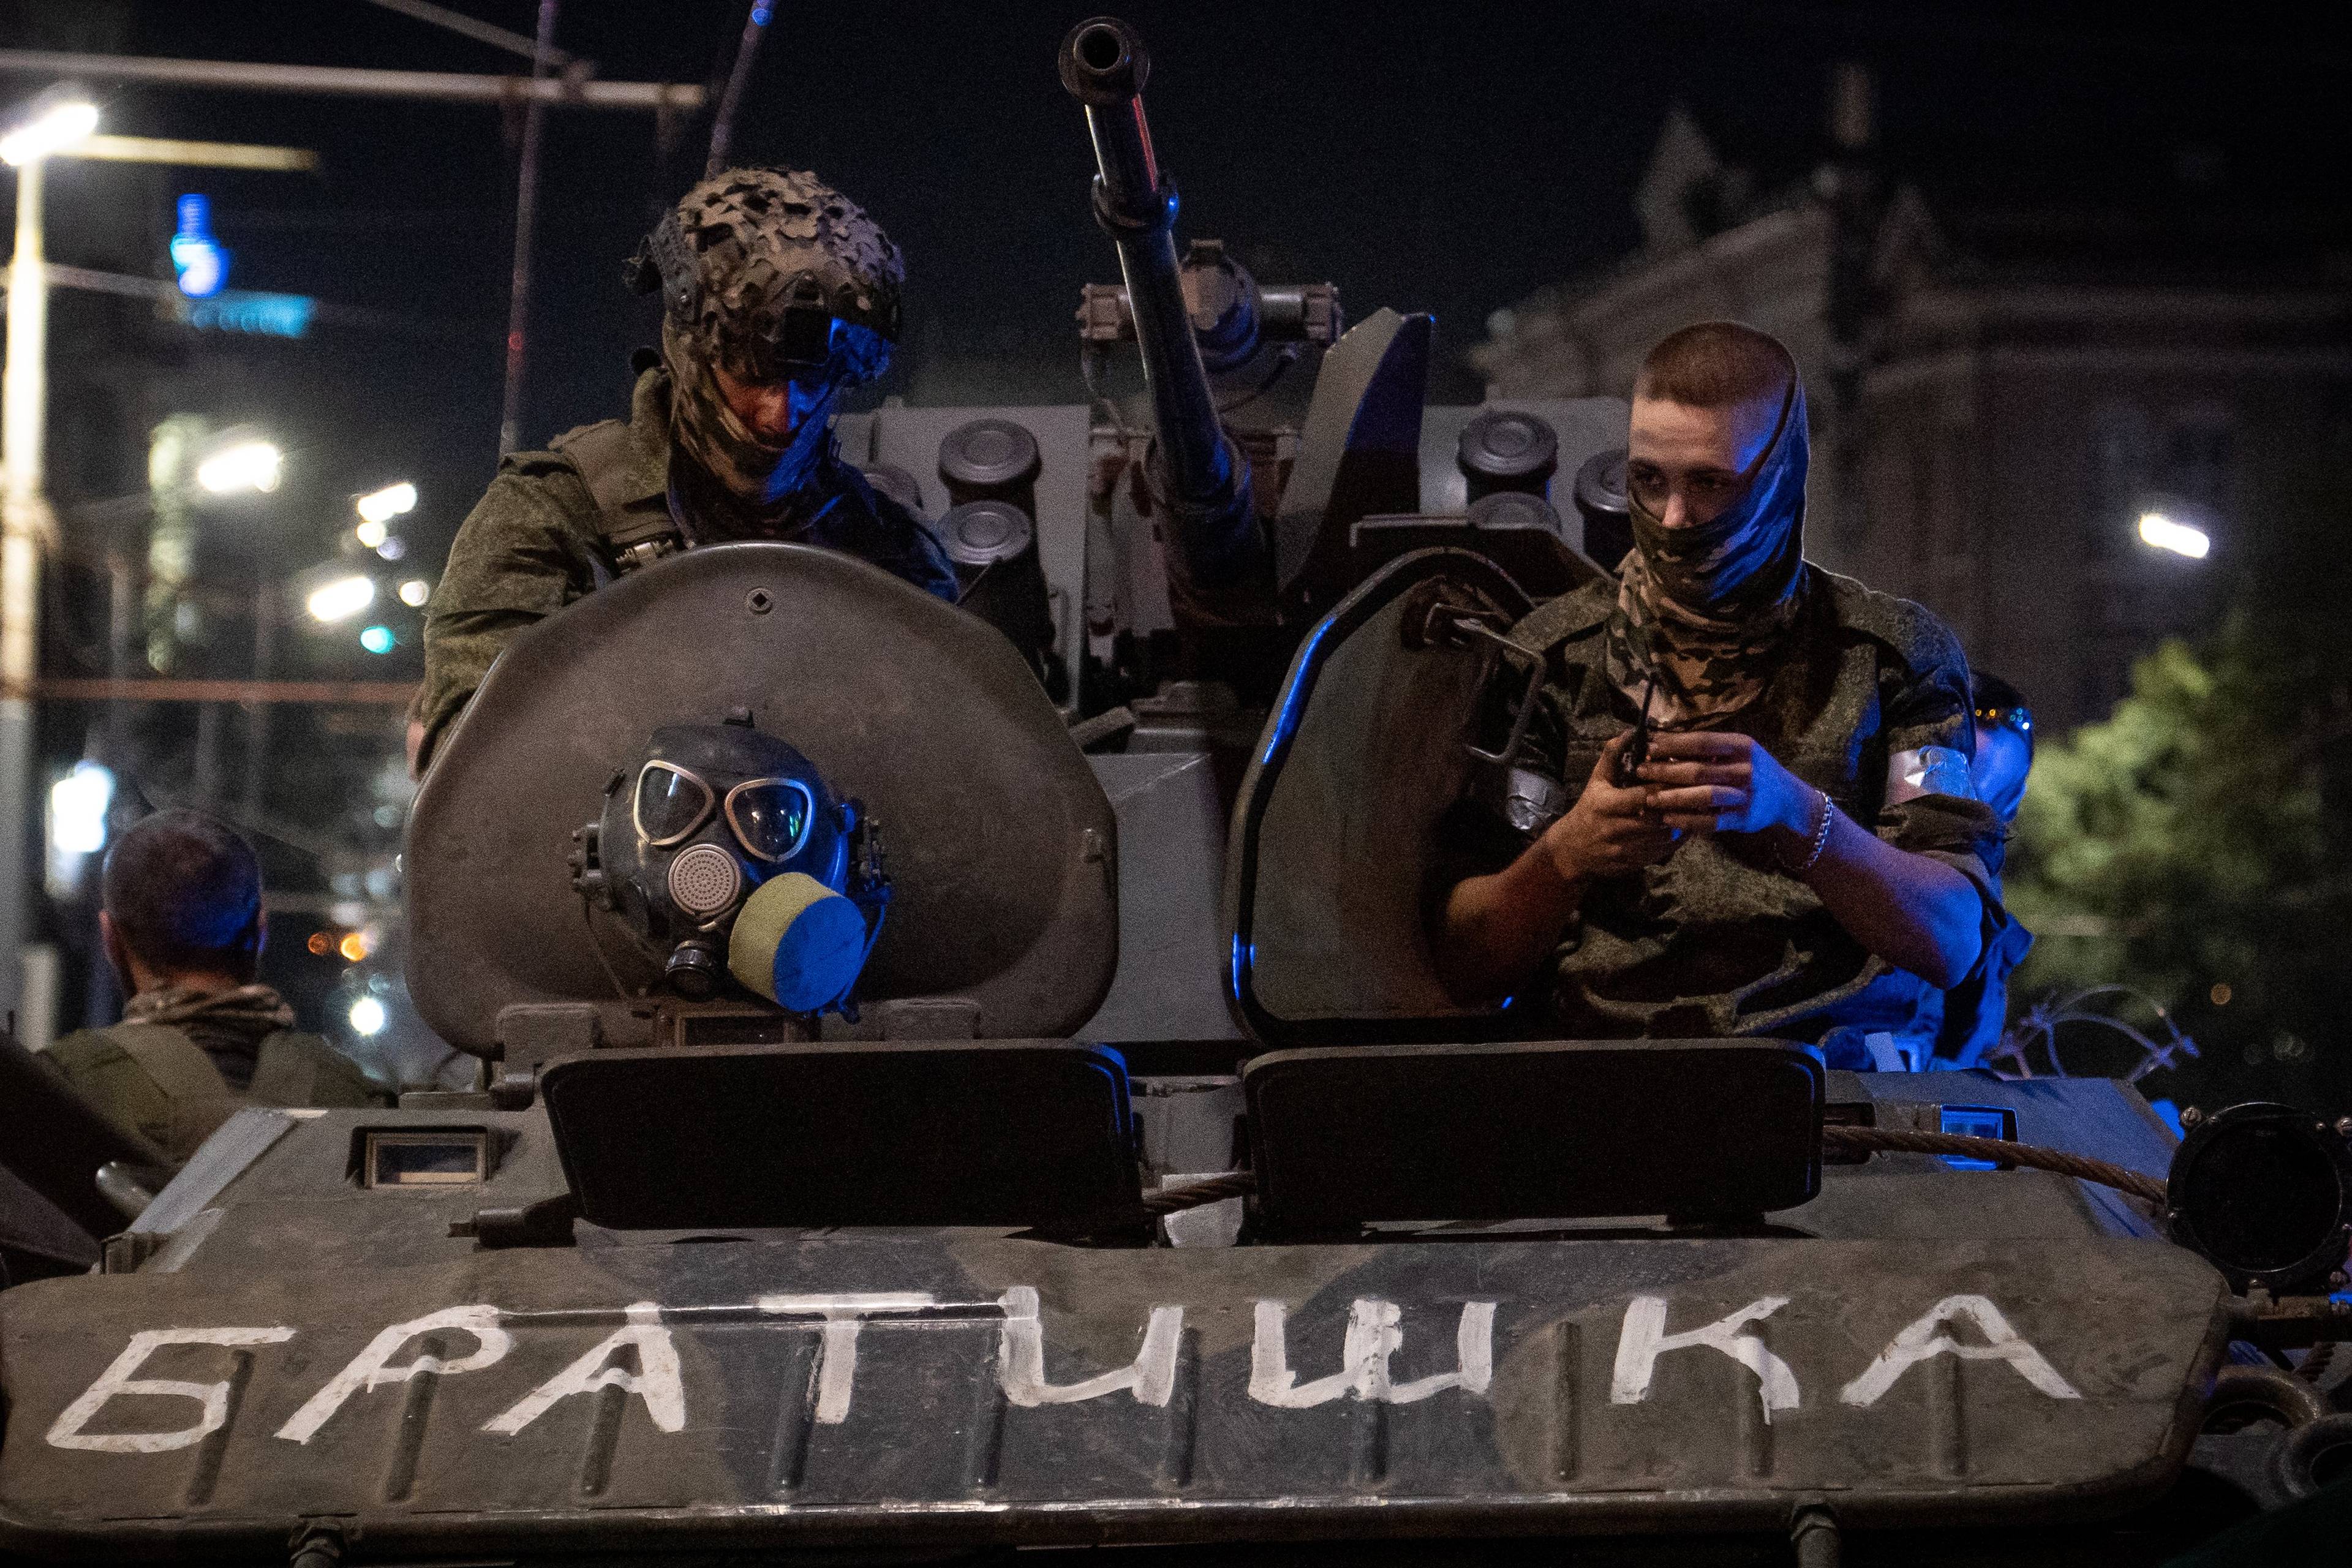 żołnierze w rynsztunku bojowym wyglądają z czołgu